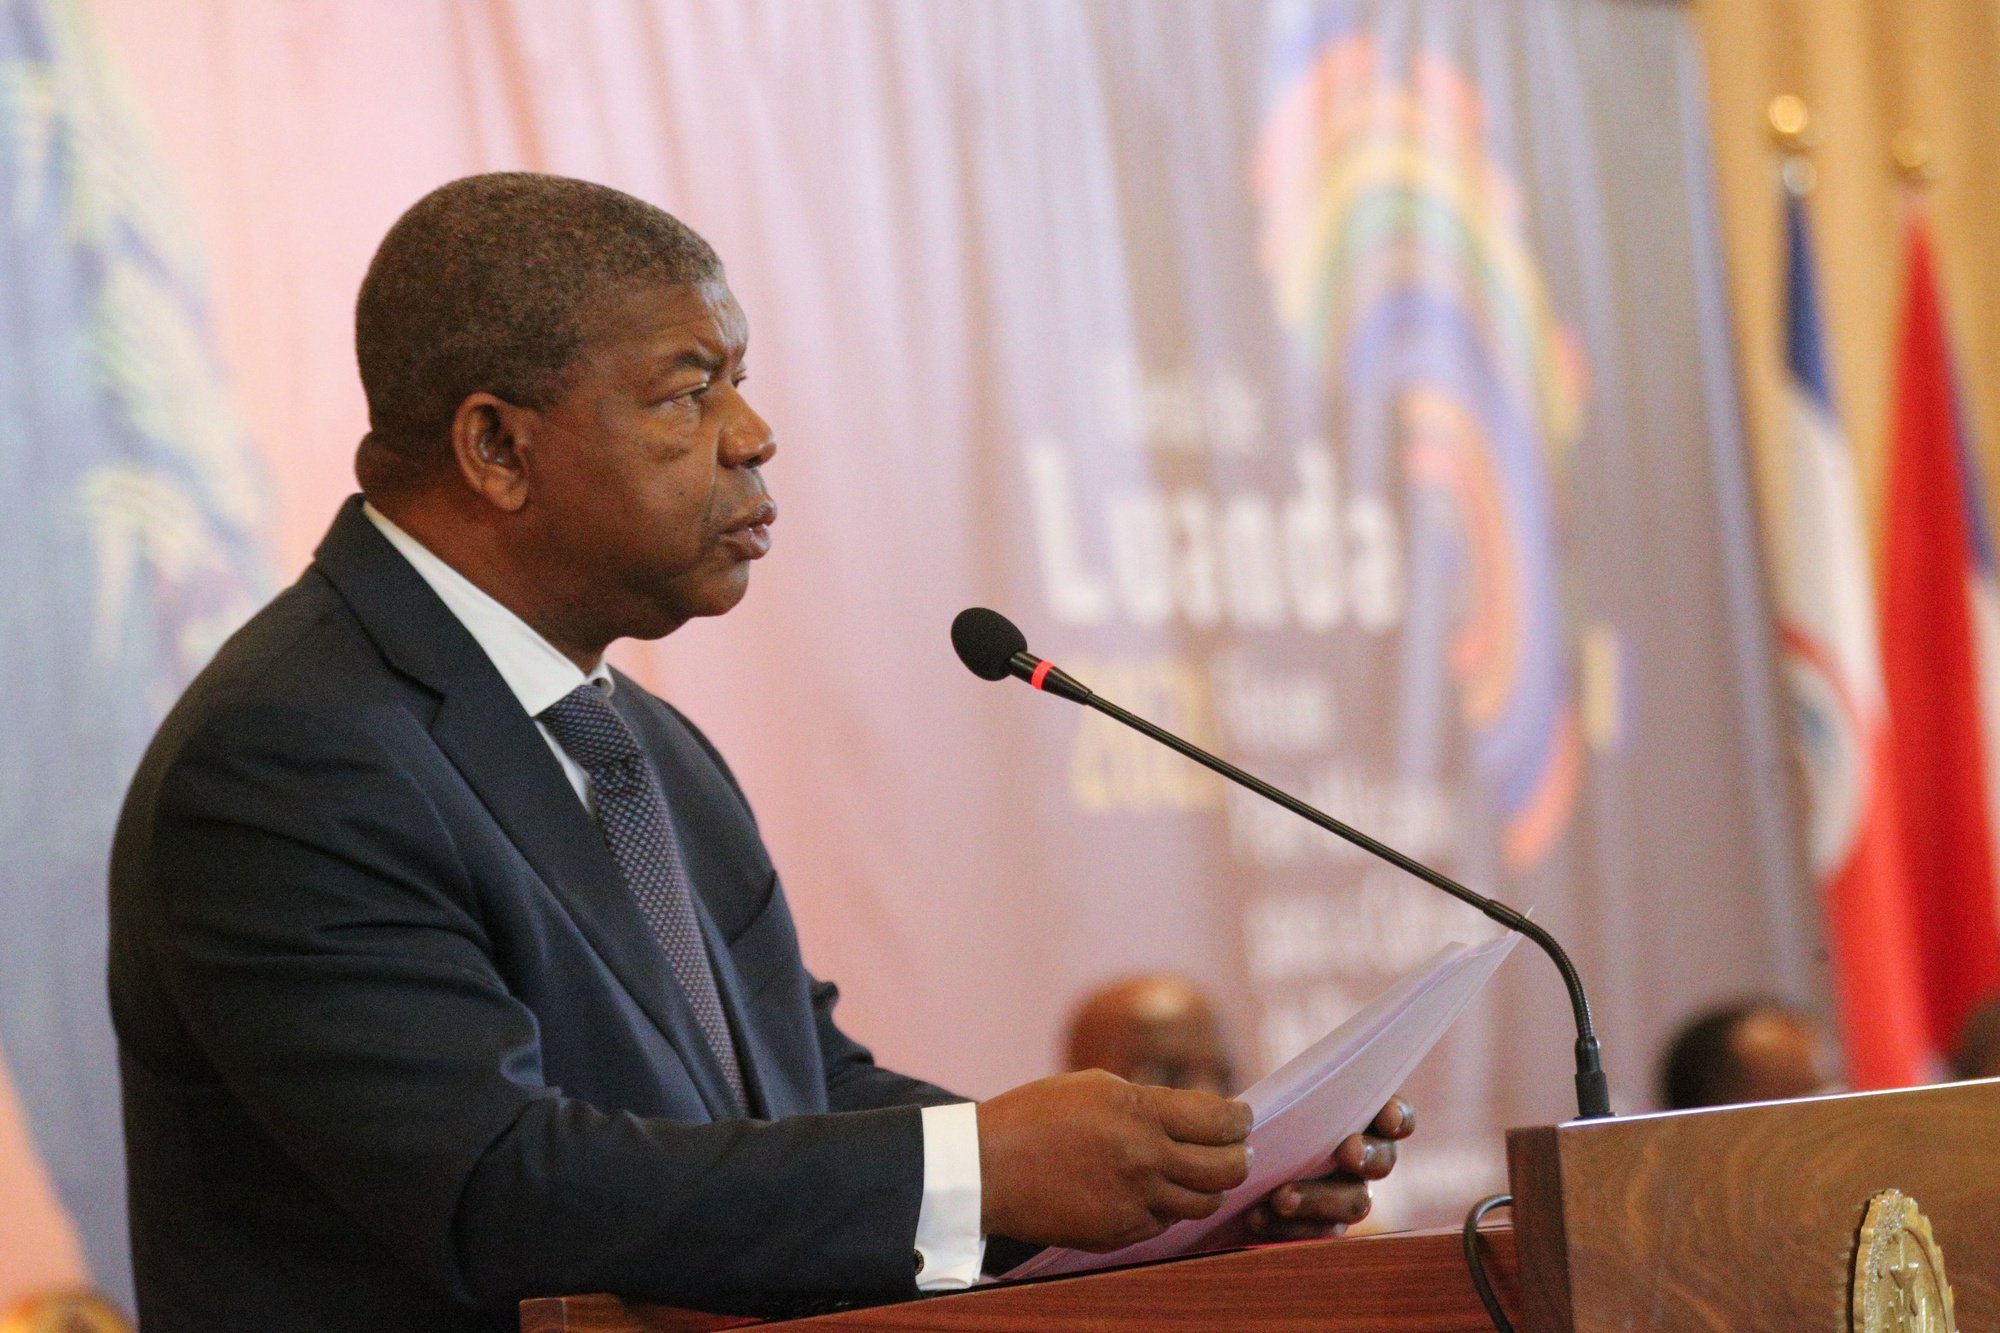 João Lourenço, Presidente da República de Angola discursa durante o início da 2.ª edição da Bienal de Luanda - “Fórum Pan-Africano para a Cultura de Paz” na sua visita a Angola, Luanda, 27 novembro 2021.  AMPE ROGÉRIO / LUSA